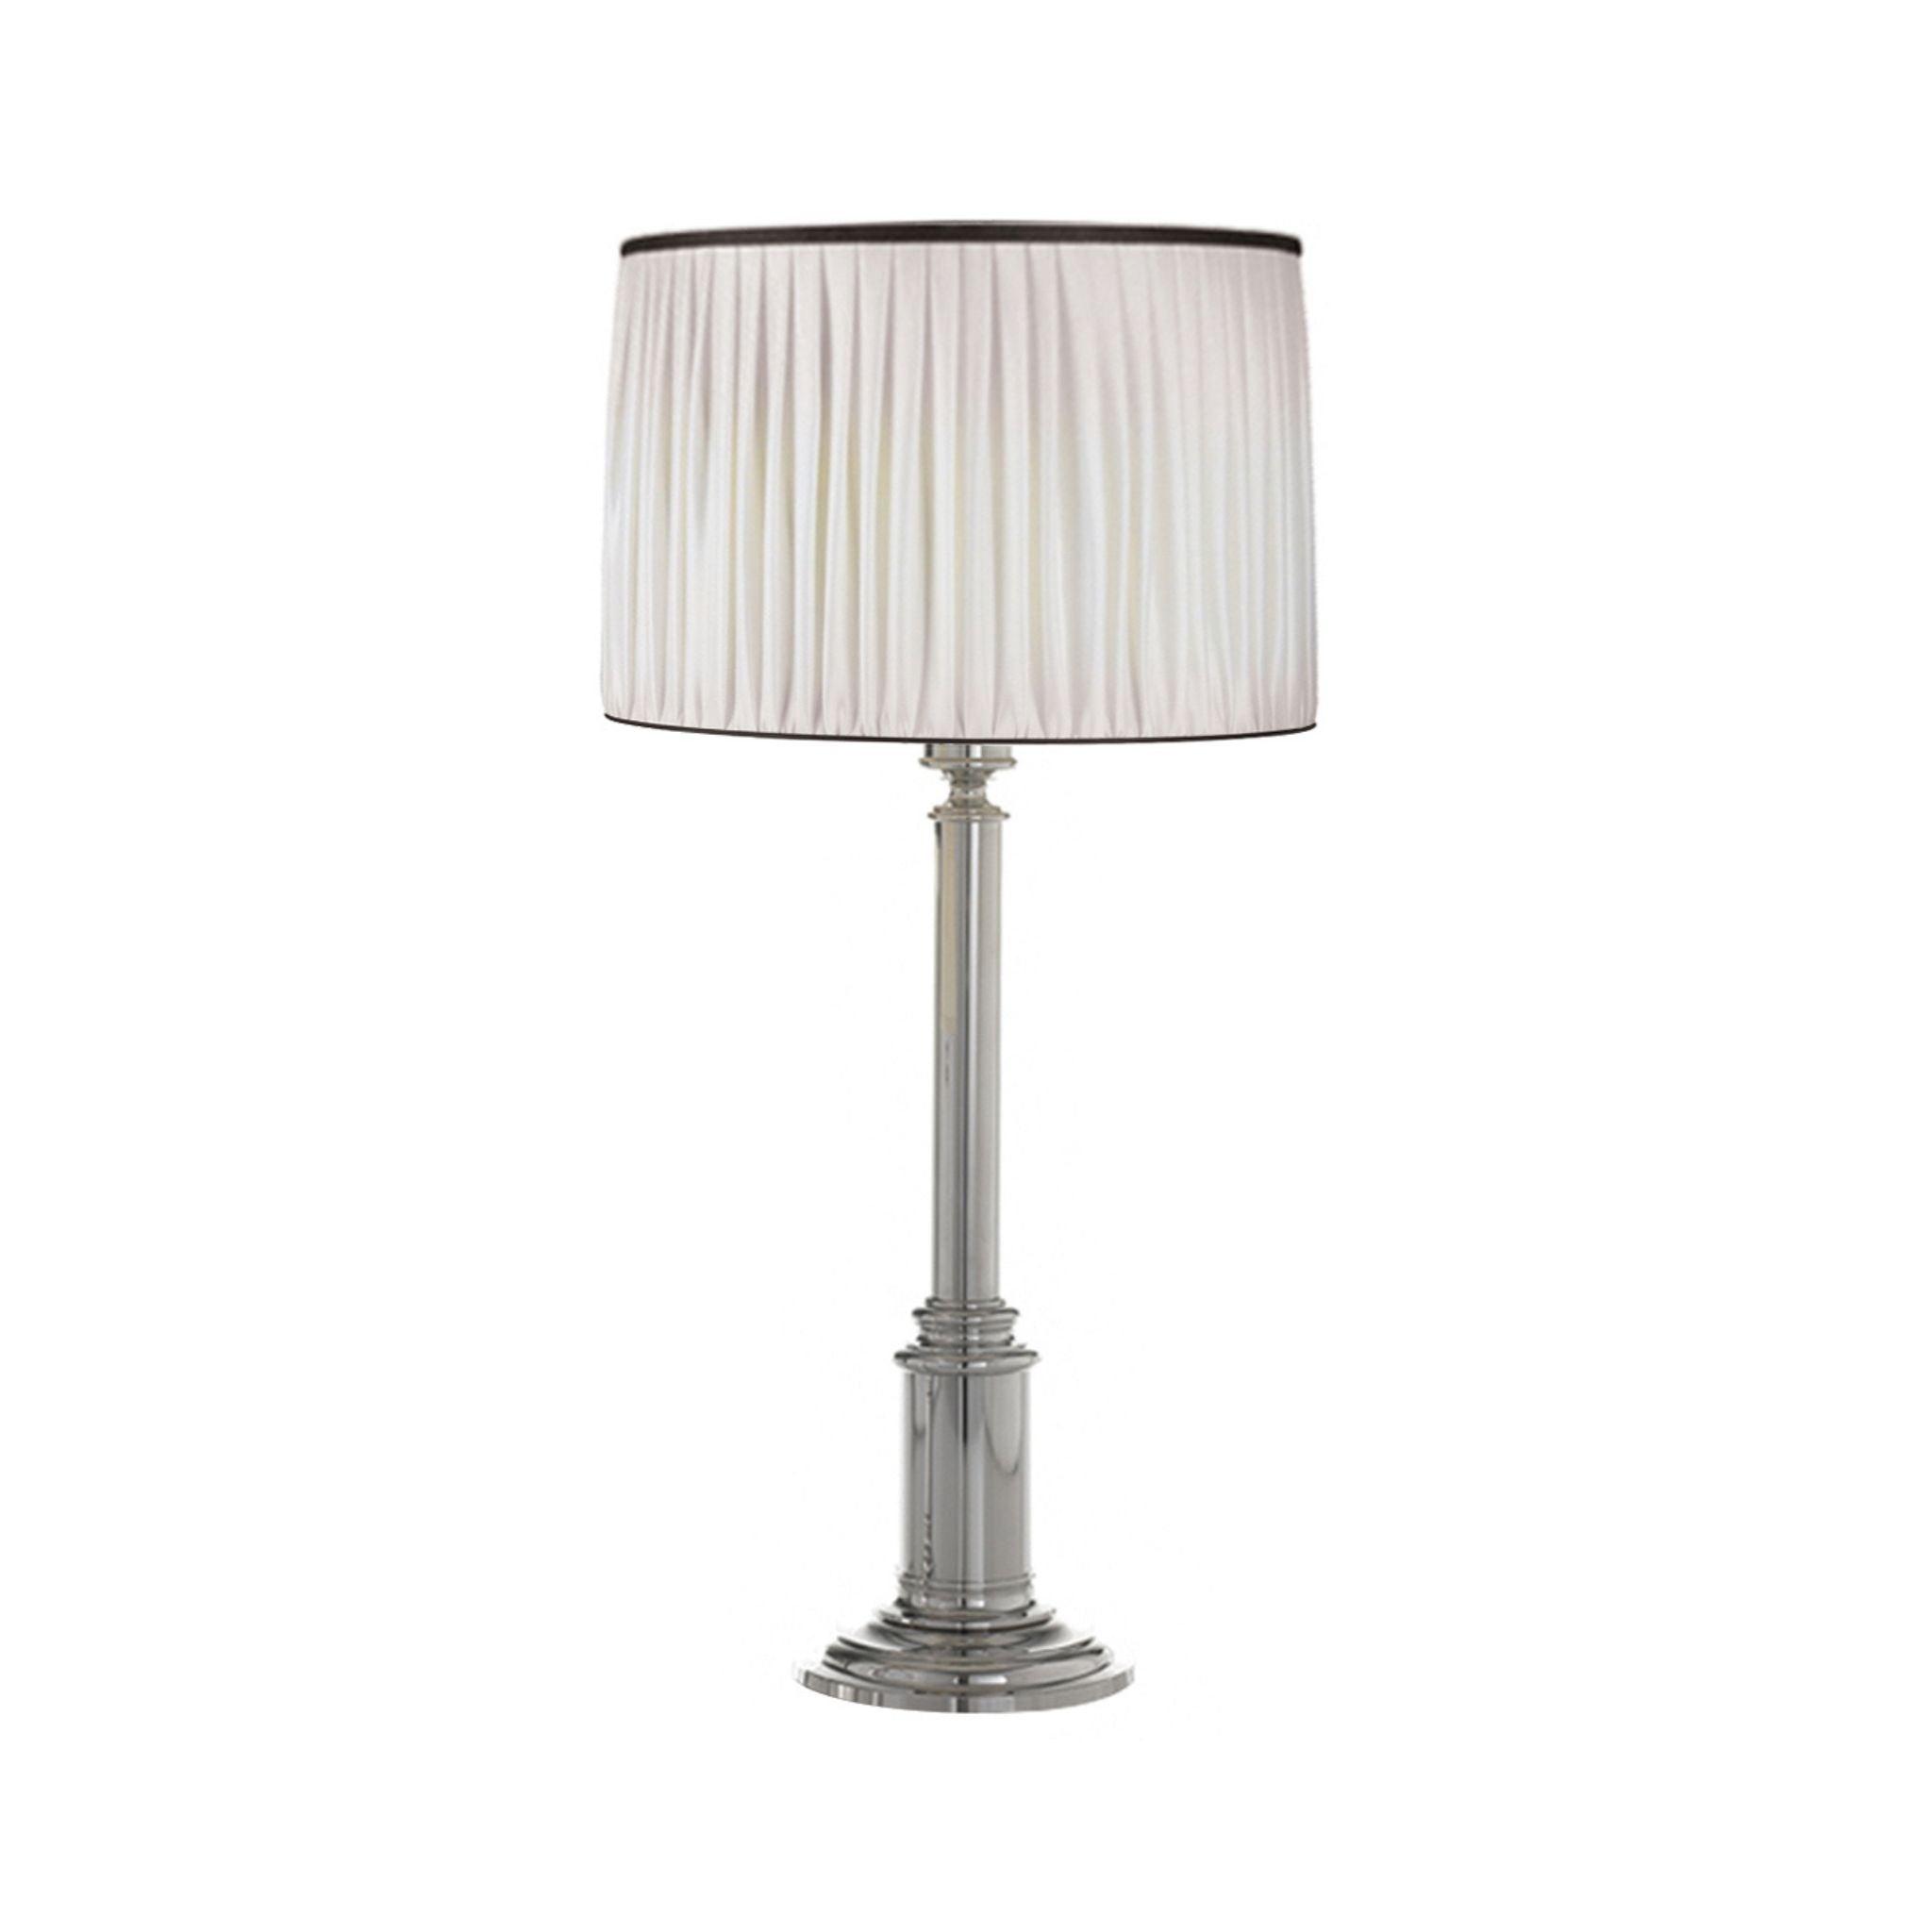 Novecento brass column table lamp - ilbronzetto